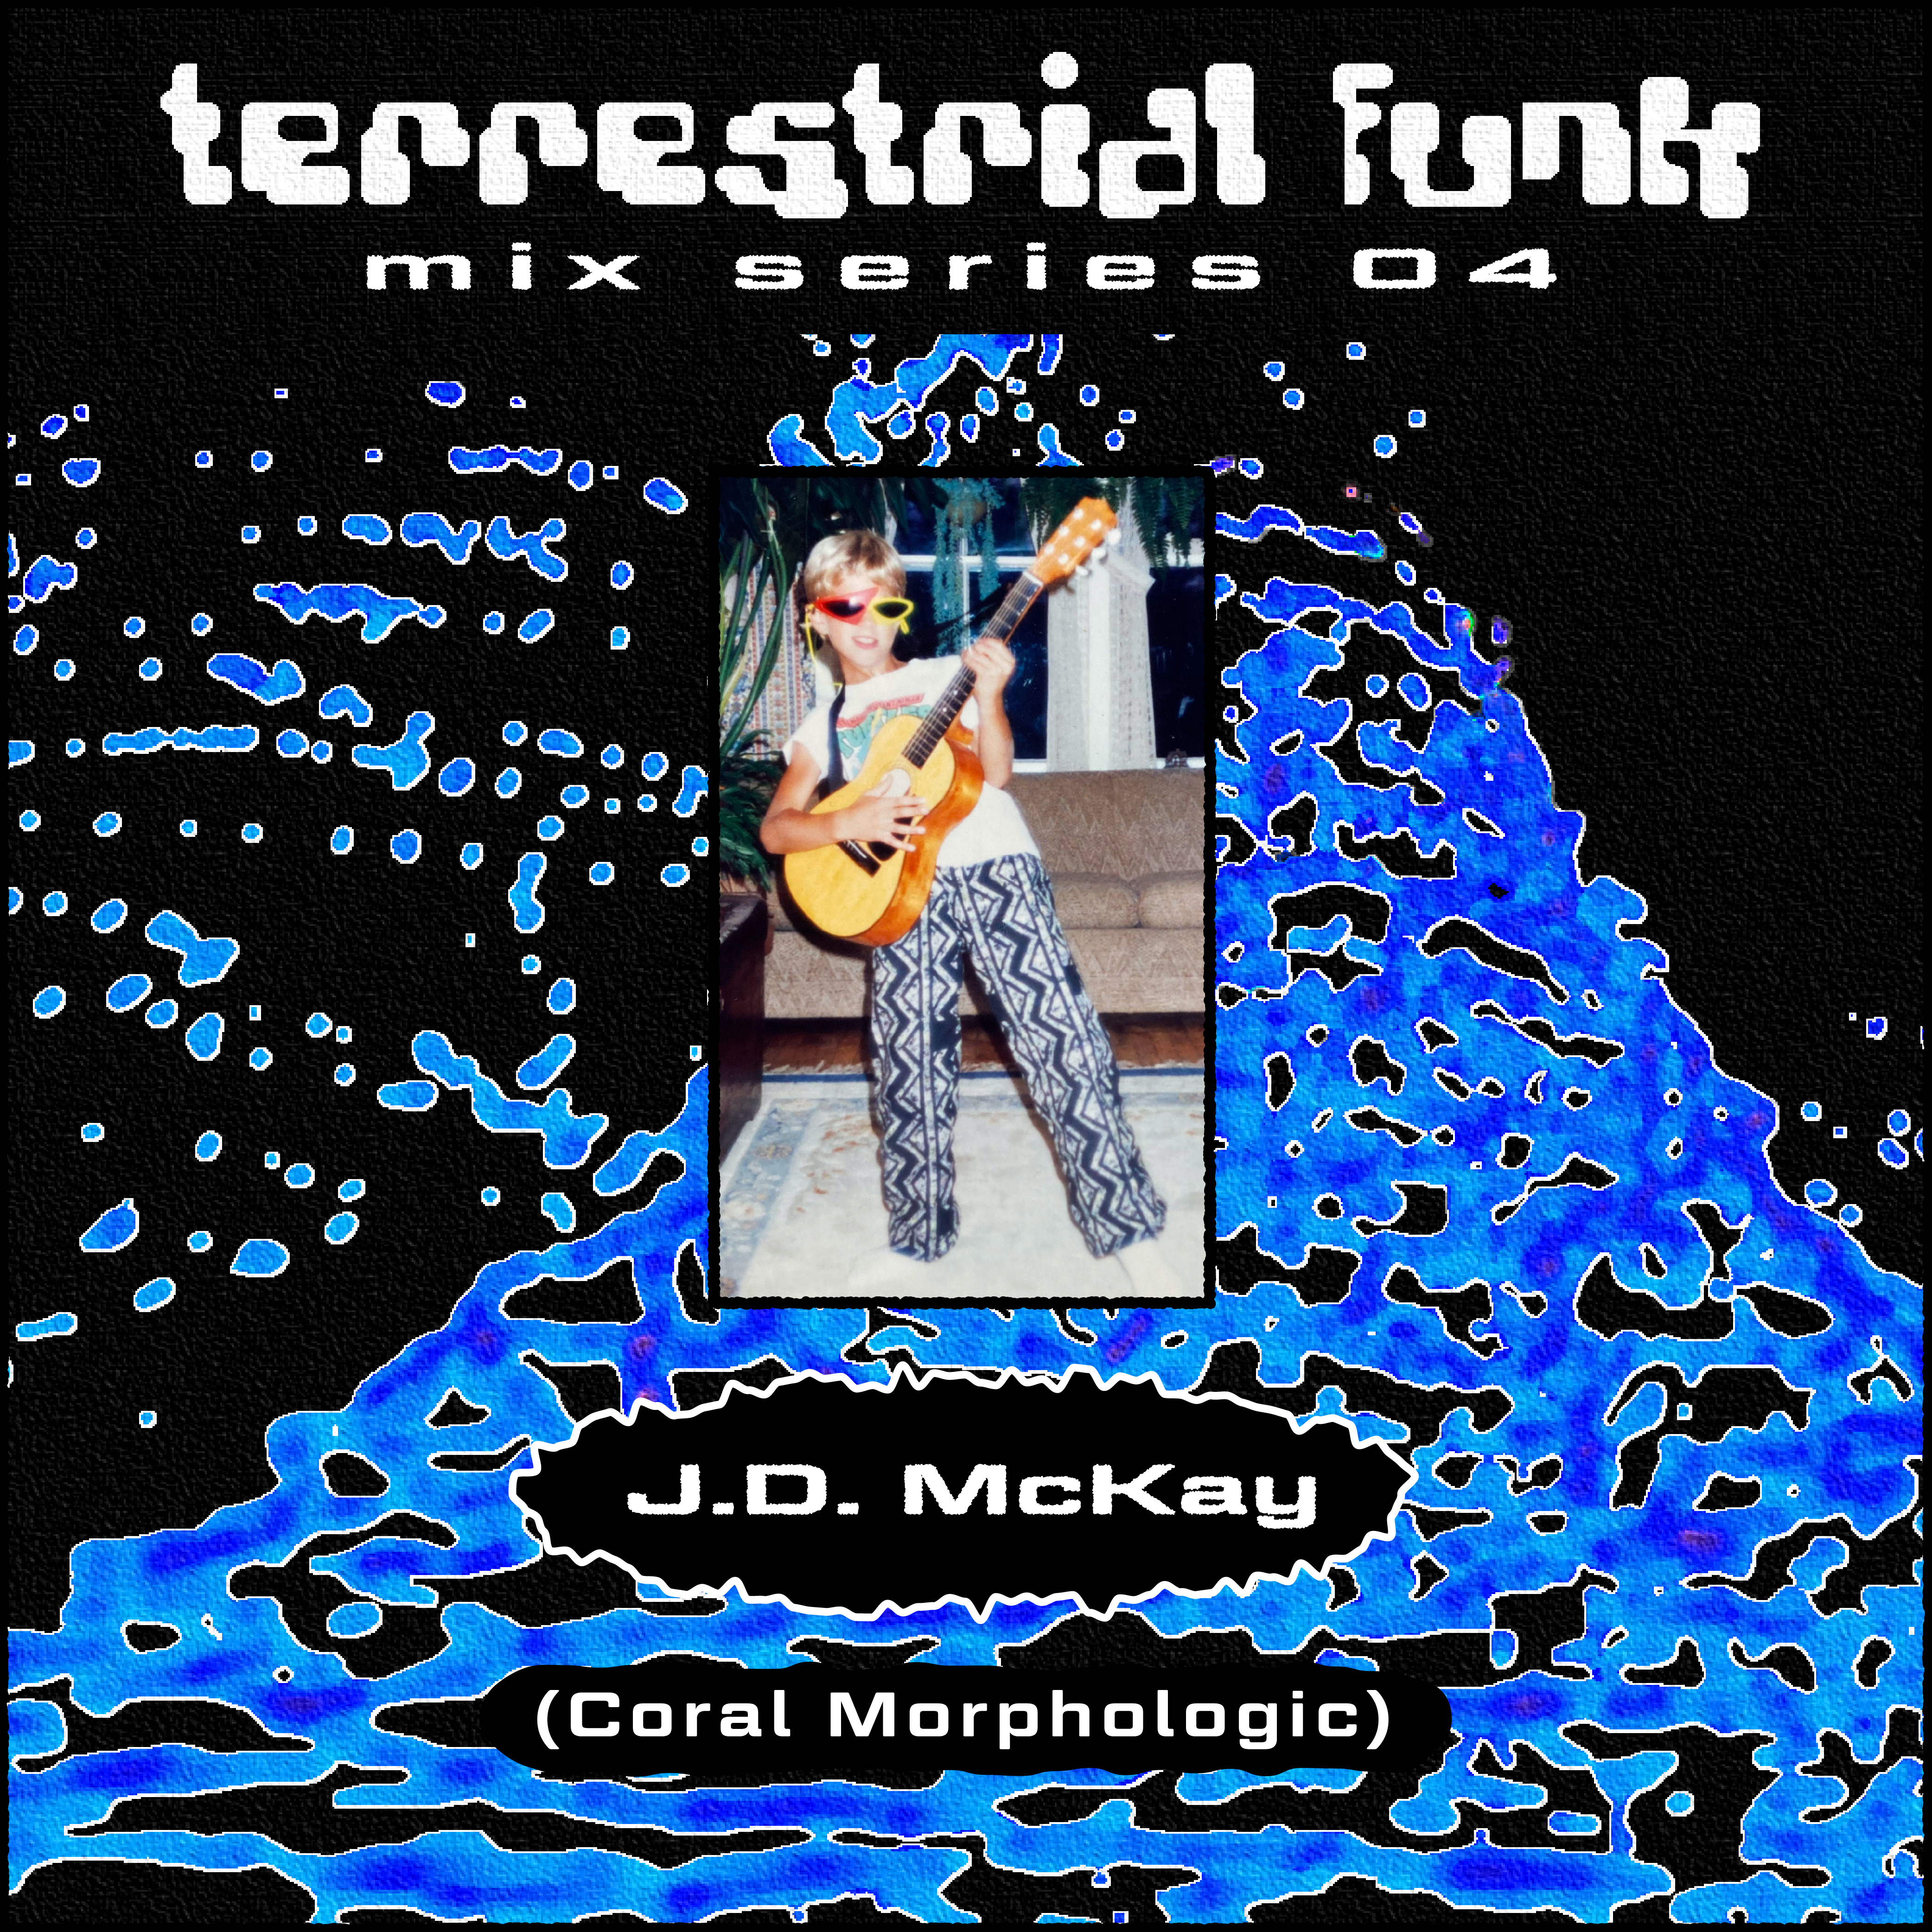 J.D. McKay (Coral Morphologic) Mix & Interview